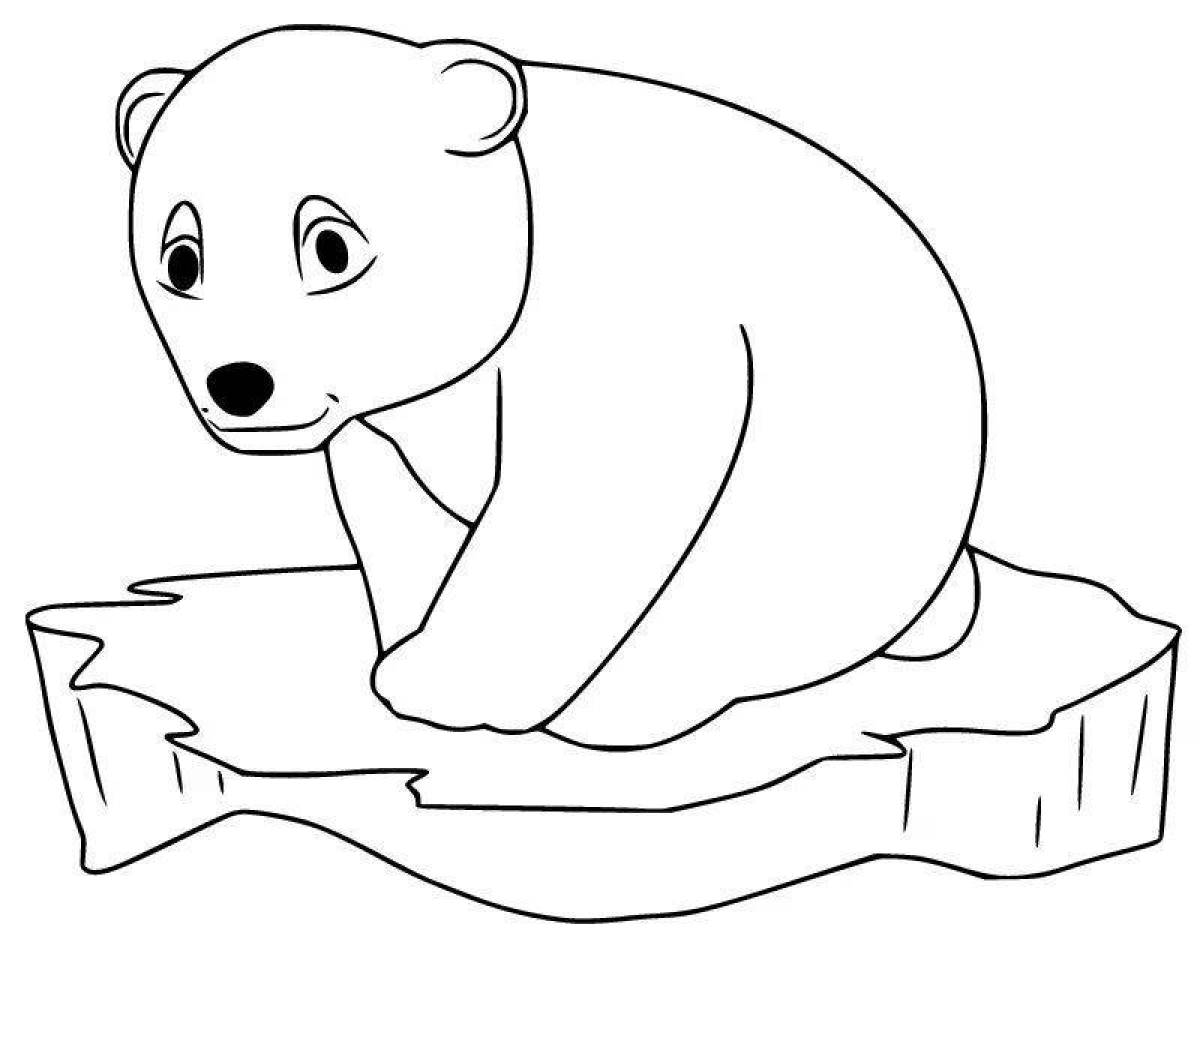 Белый Медвежонок раскраска для детей